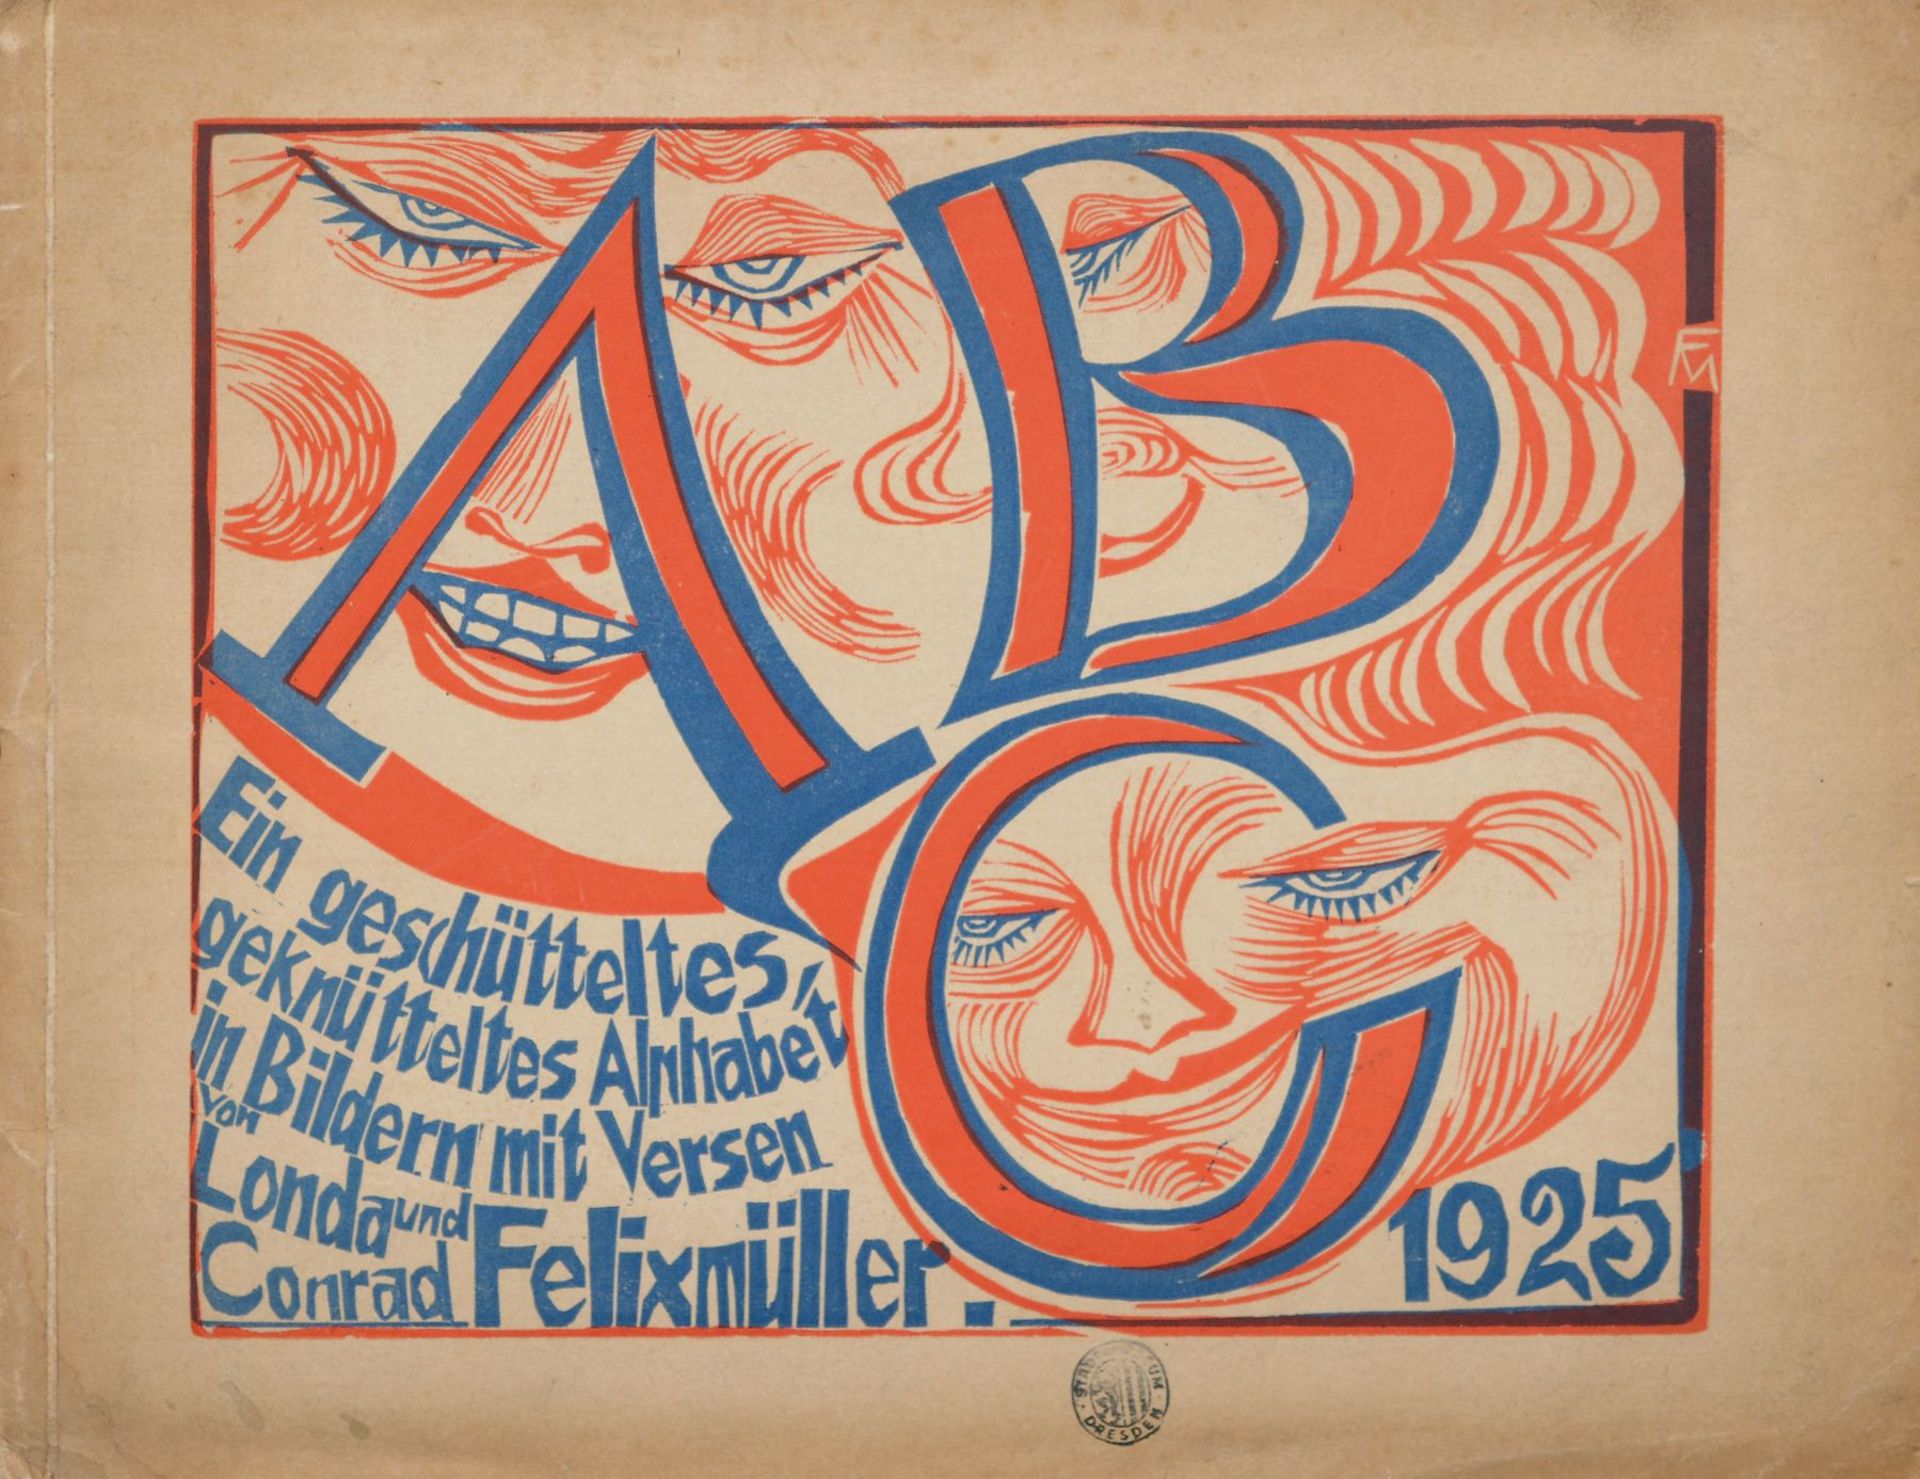 Conrad Felixmüller "ABC - Ein geschütteltes, geknütteltes Alphabet in Bildern mit Versen von Londa